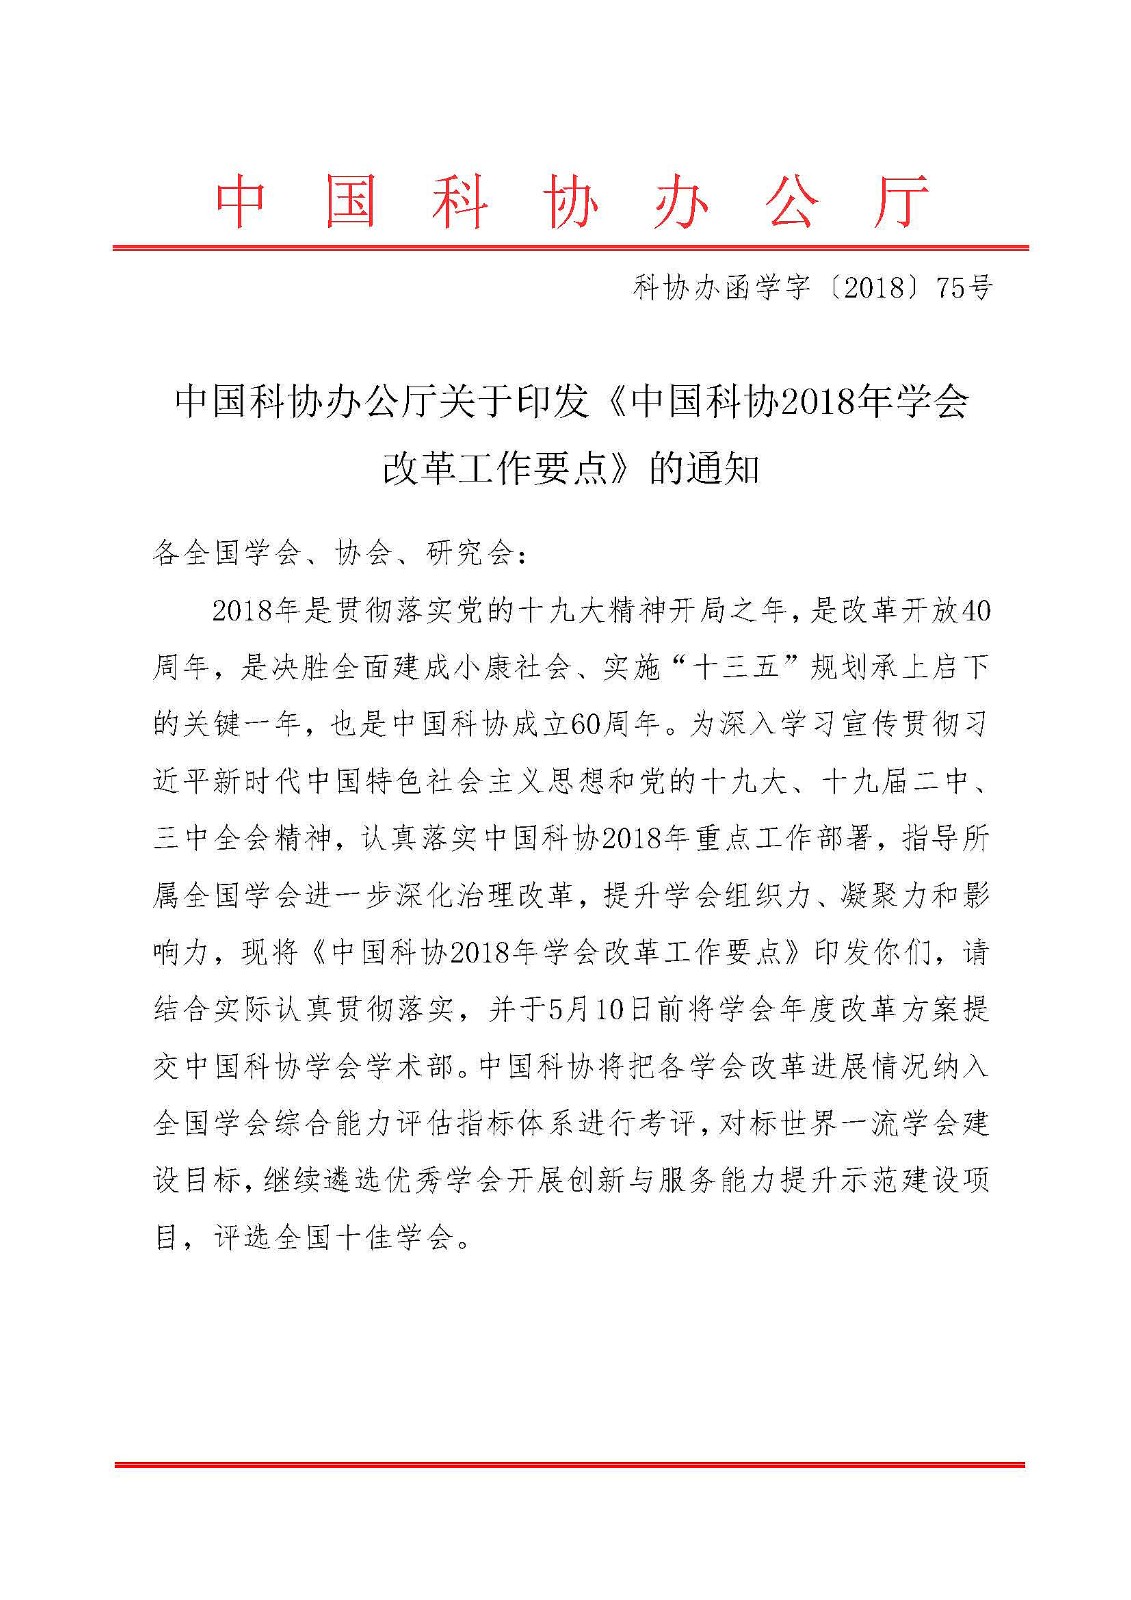 中国科协办公厅关于印发《中国科协2018年学会改革工作要点》的通知1.jpg